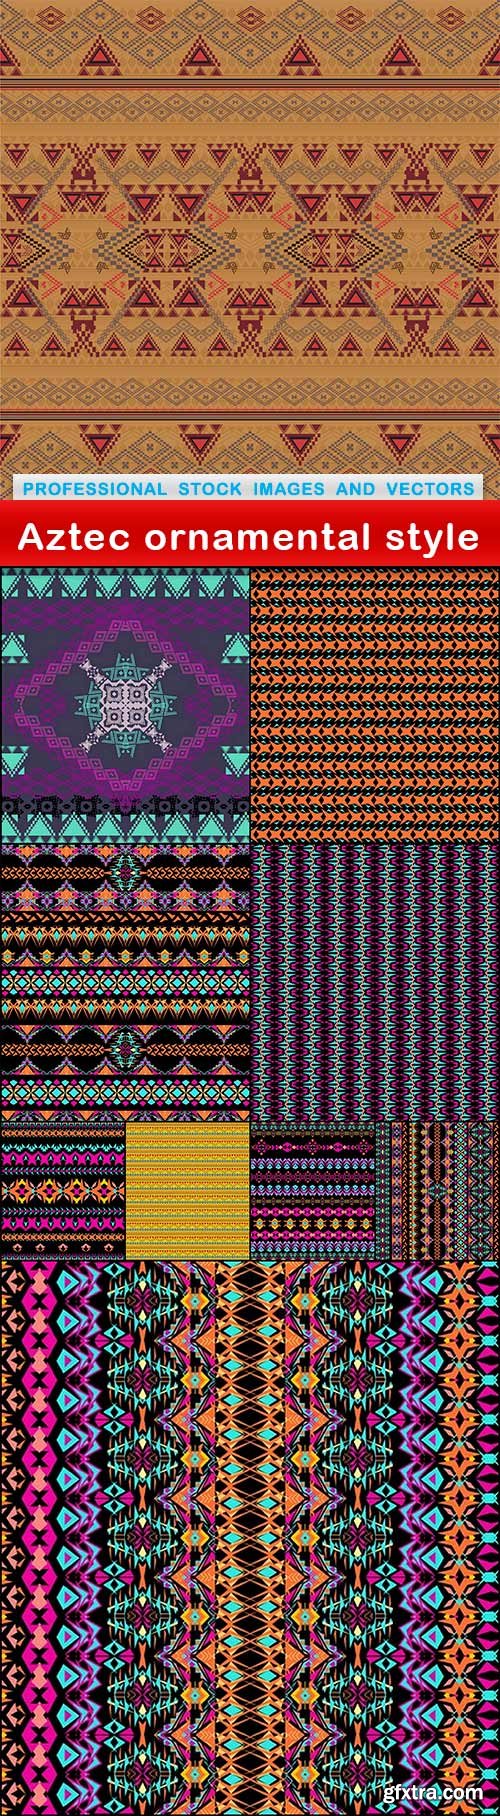 Aztec ornamental style - 10 EPS